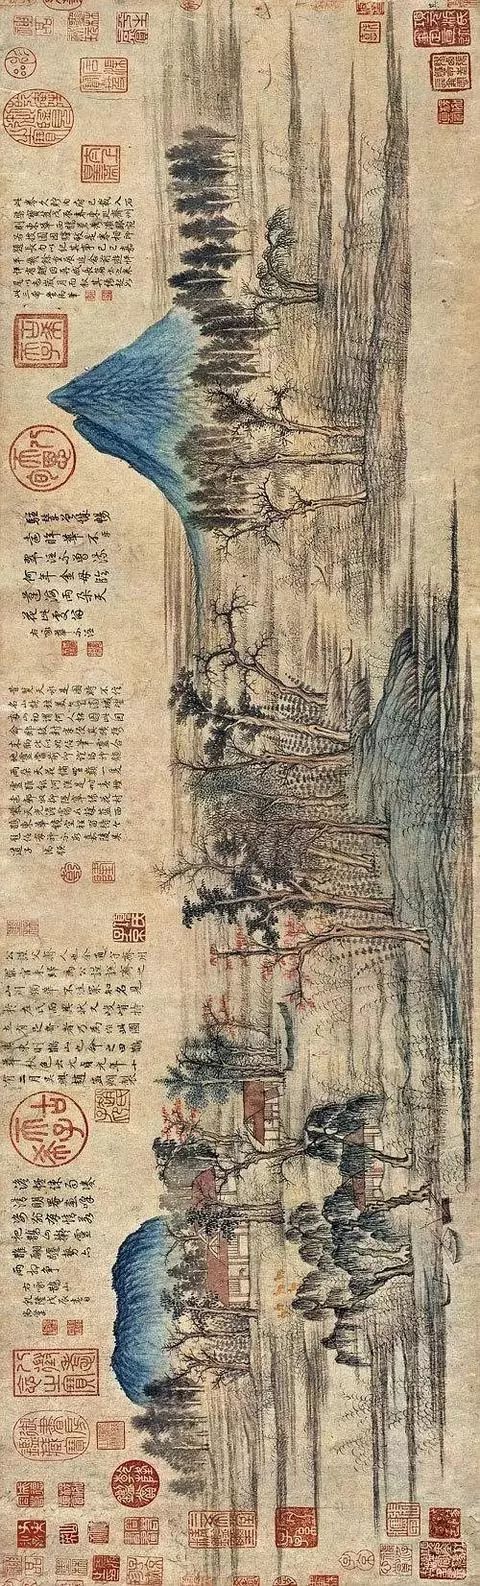 《人骑图》去印 赵孟頫提出"书画本来同"的口号,以书法入画,使绘画的